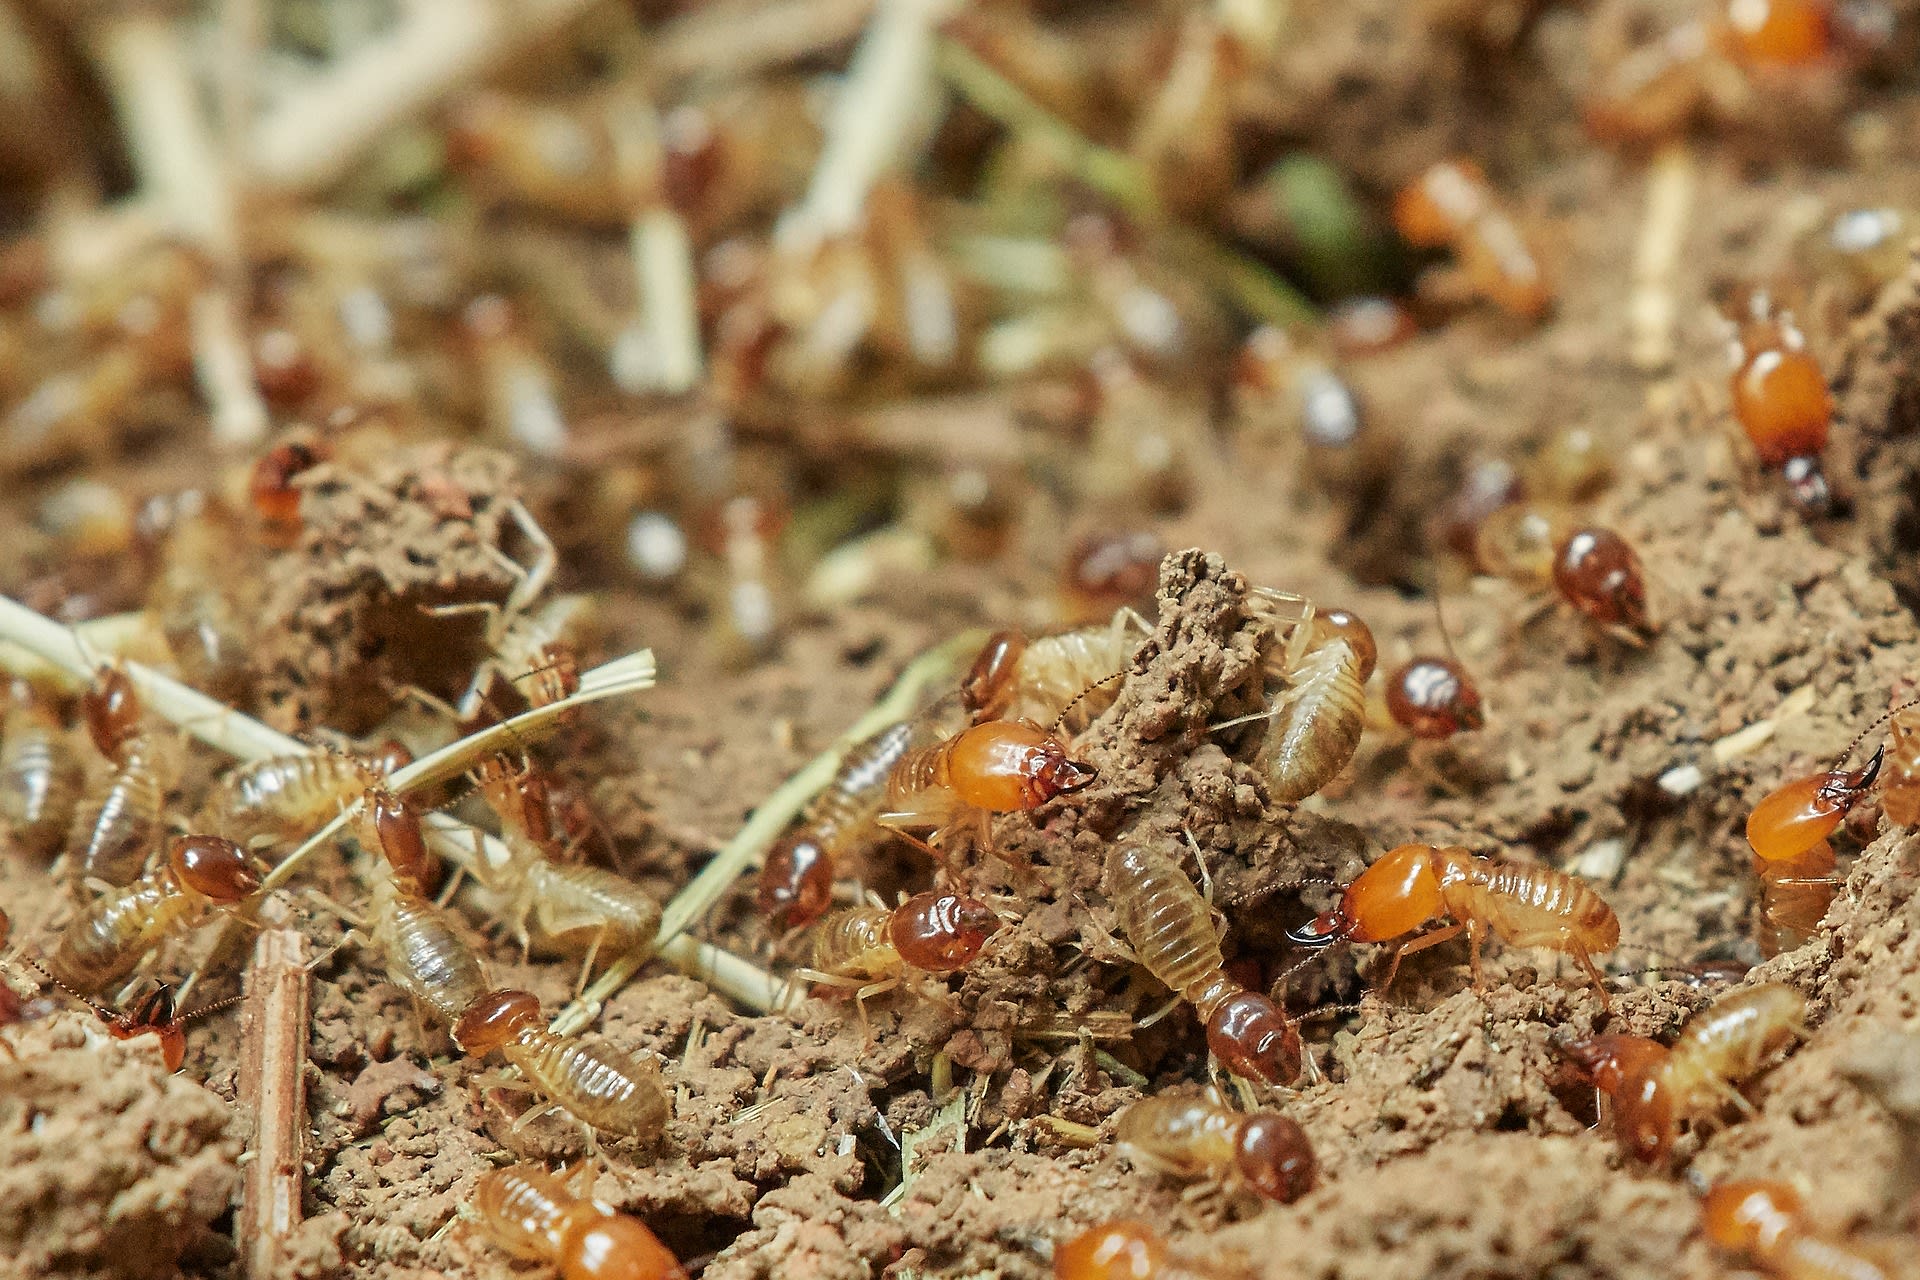 V jediném hnízdě najdeme až několik milionů jedinců. Podobně jako u včel i u termitů funguje dělba práce.